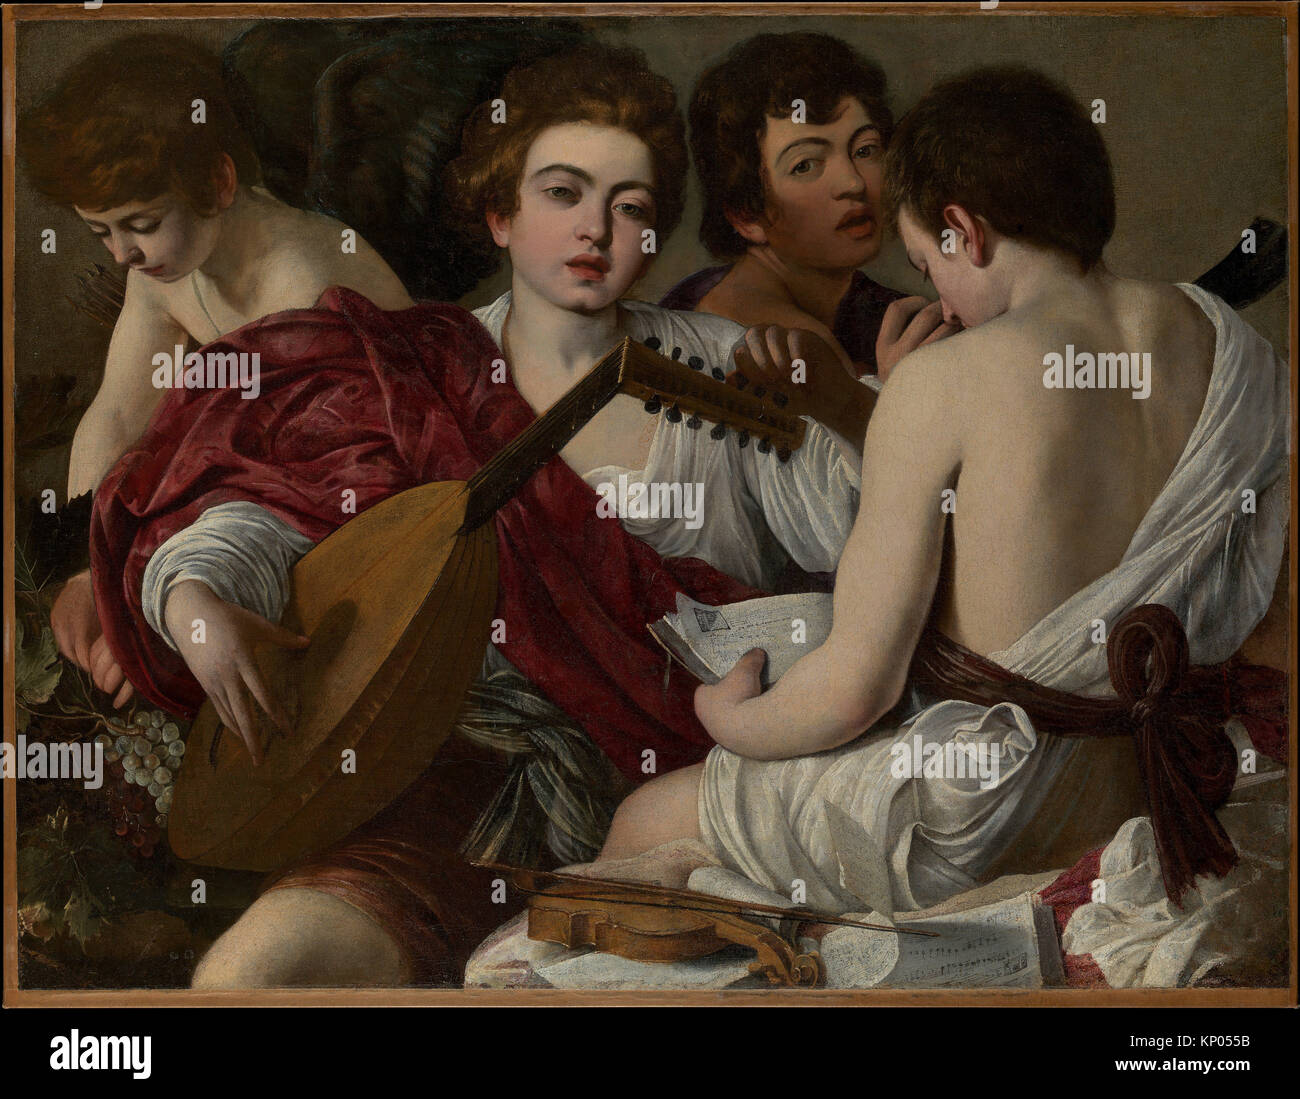 The Musicians. Artist: Caravaggio (Michelangelo Merisi) (Italian, Milan or Caravaggio 1571-1610 Porto Ercole); Date: ca. 1595; Medium: Oil on canvas; Stock Photo